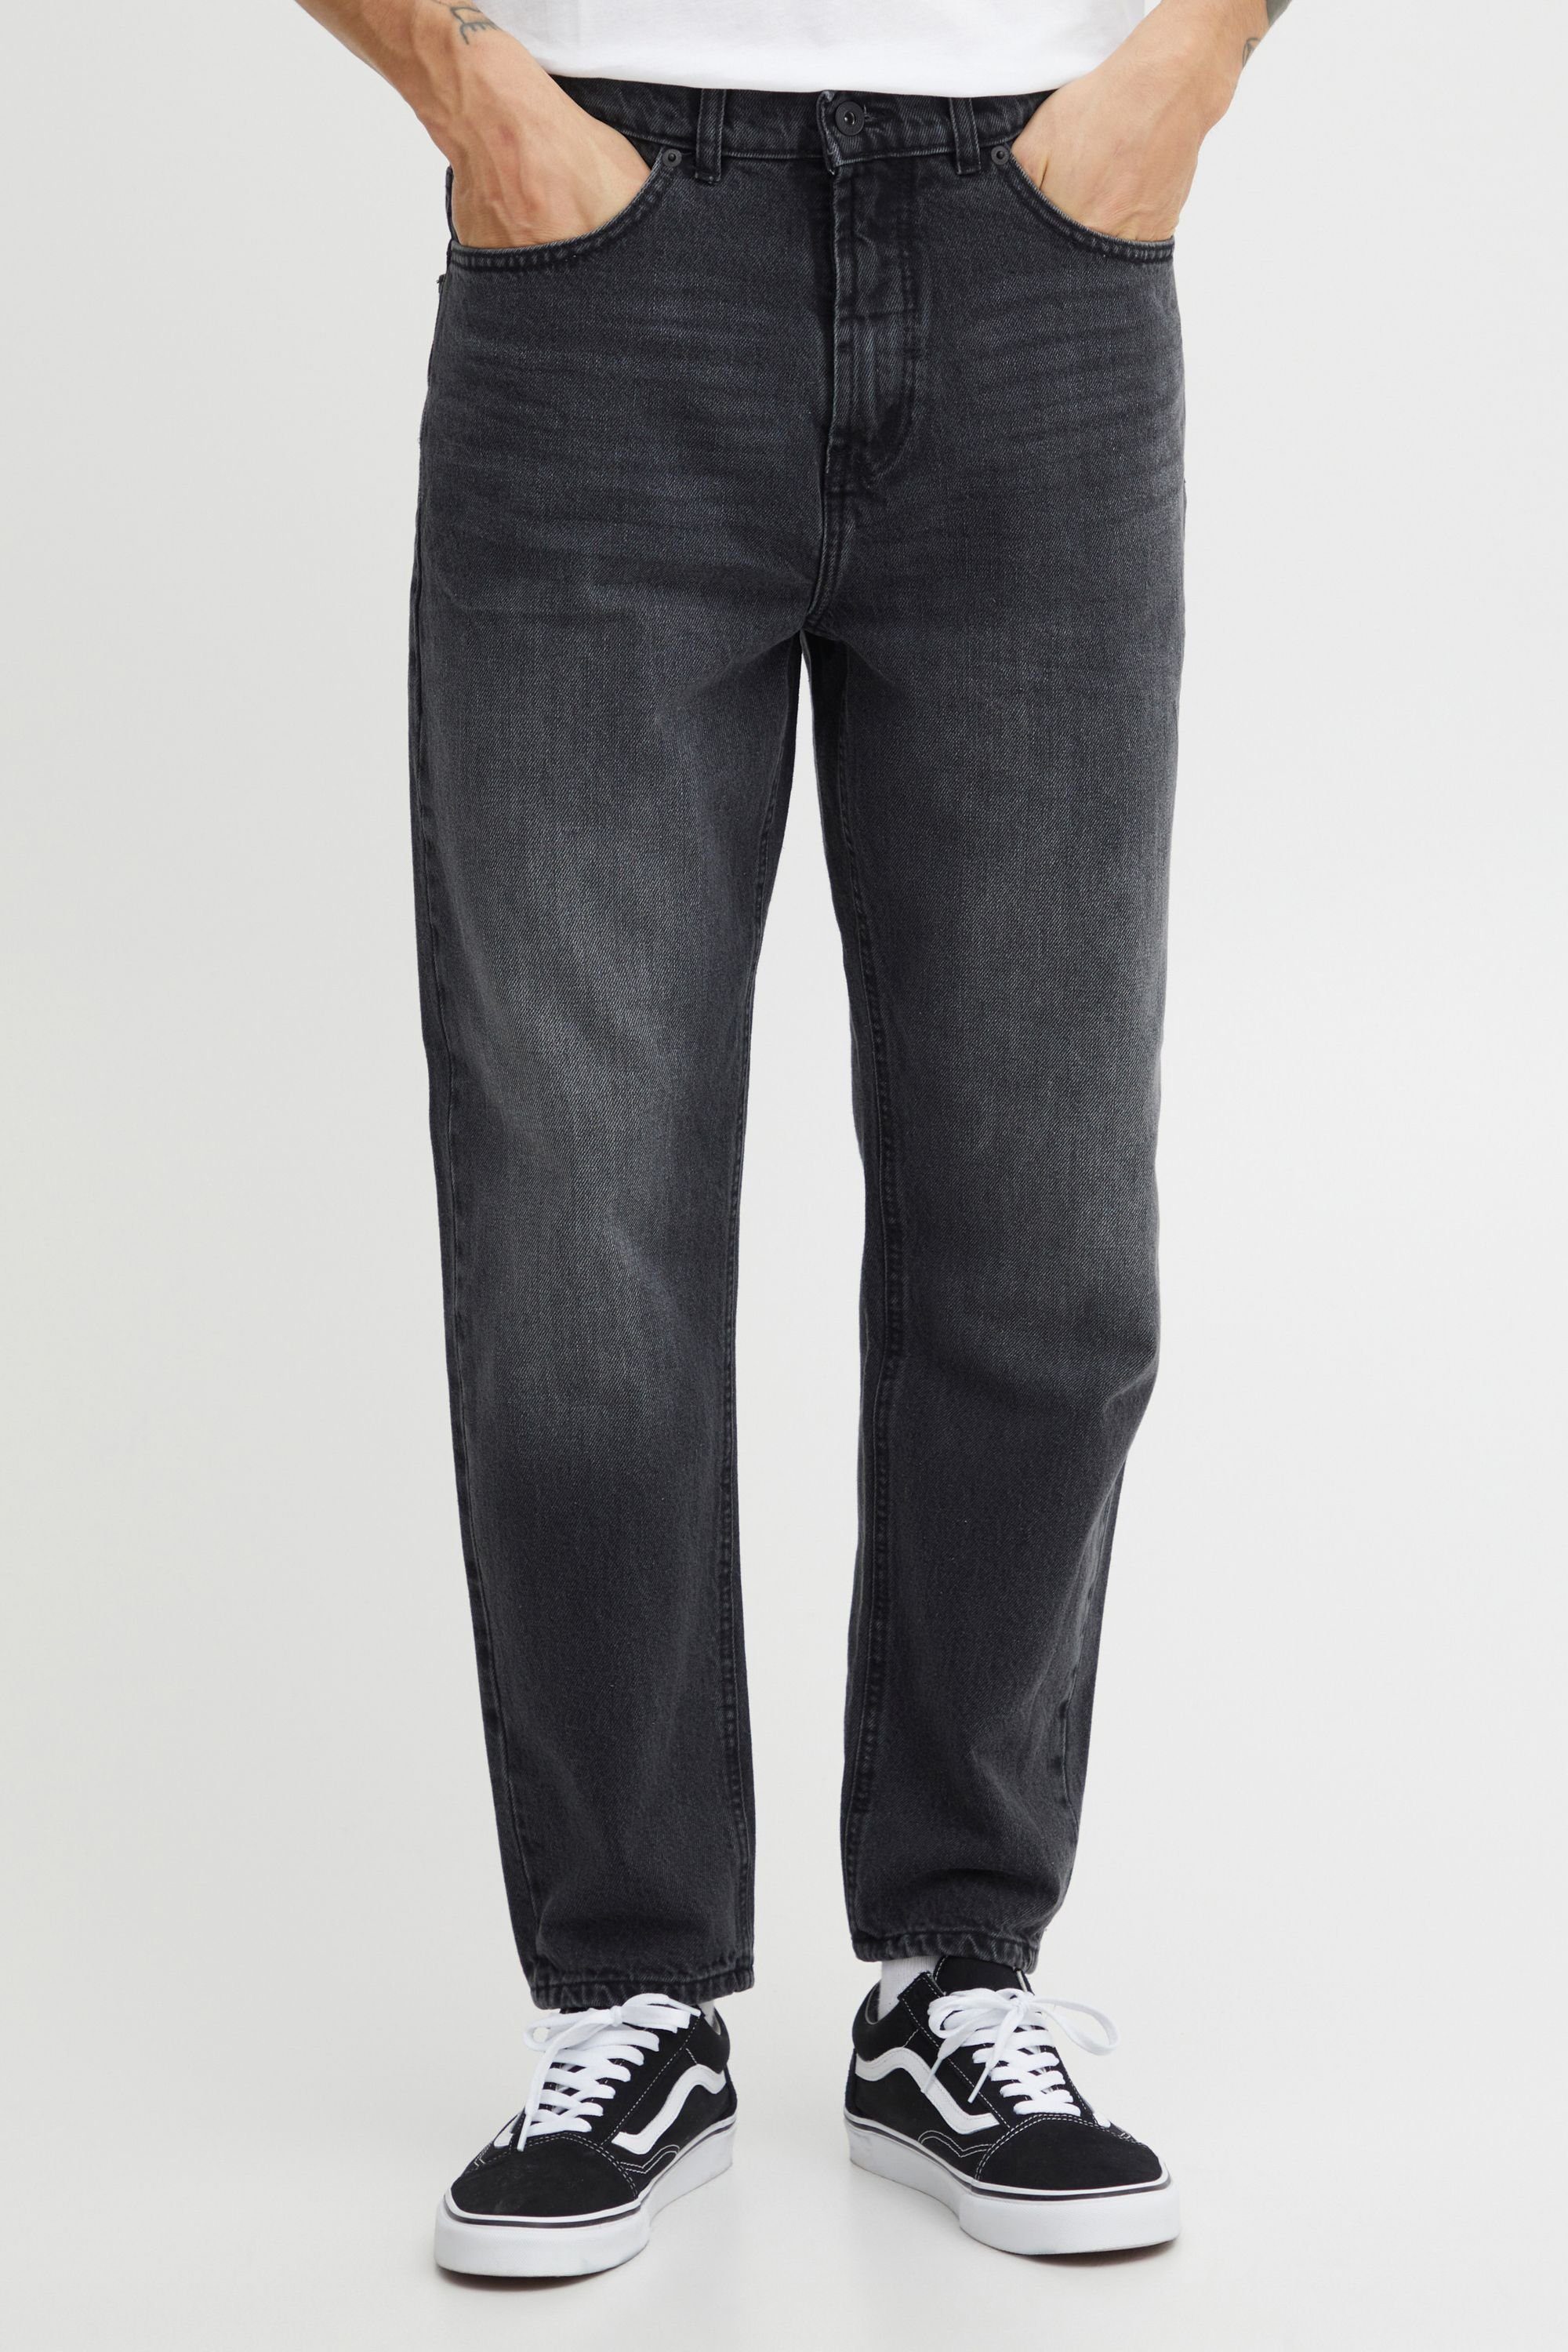 Solid 5-Pocket-Jeans SDBoaz Black (700036) Vintage Denim